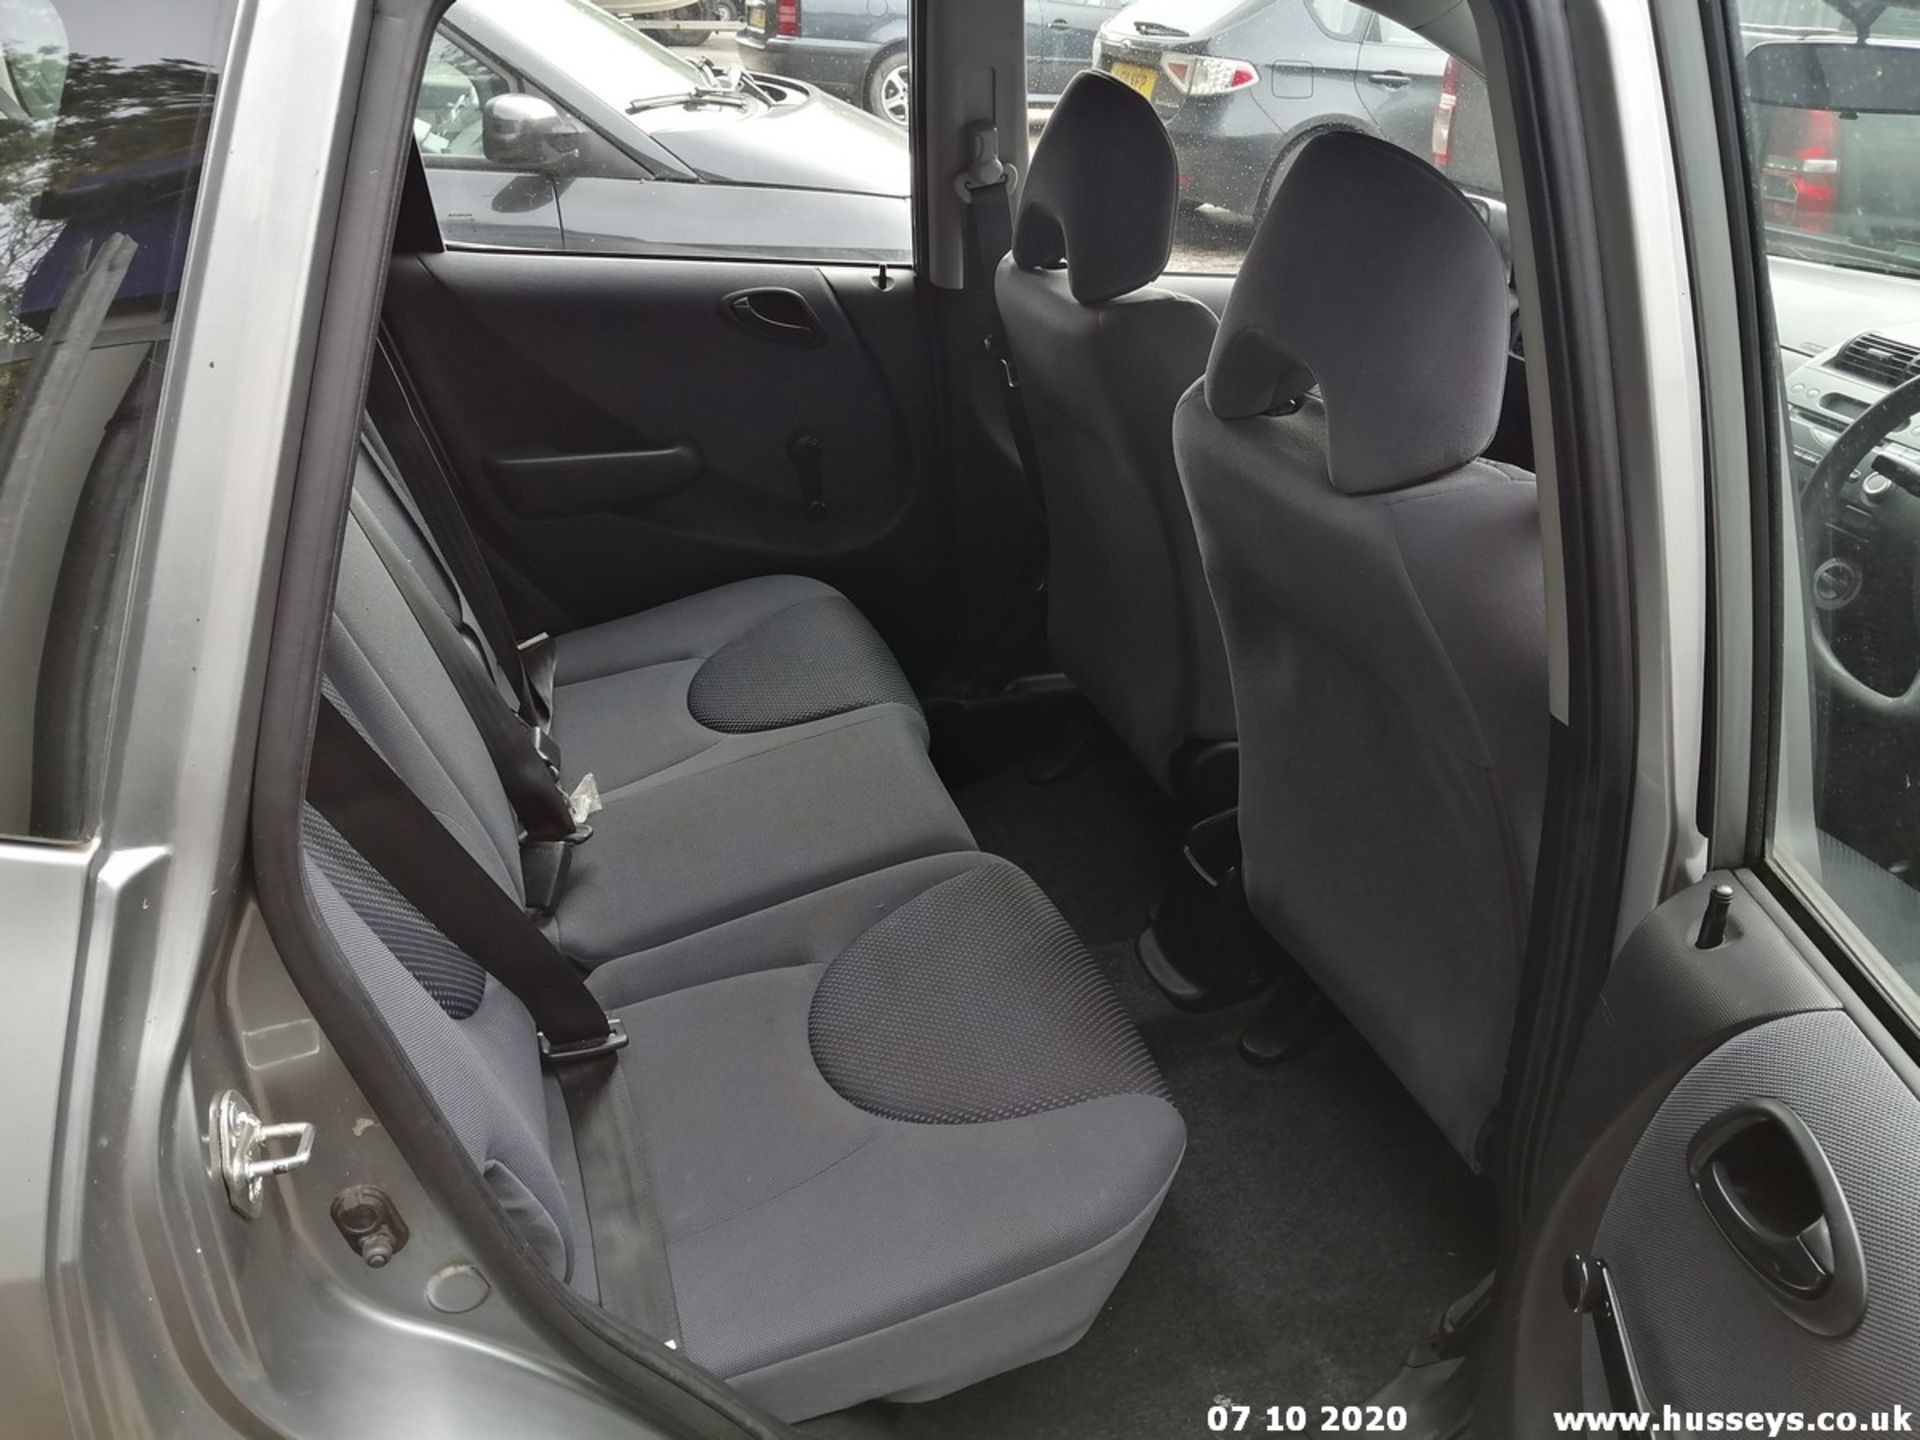 08/57 HONDA JAZZ S - 1246cc 5dr Hatchback (Silver, 110k) - Image 10 of 10